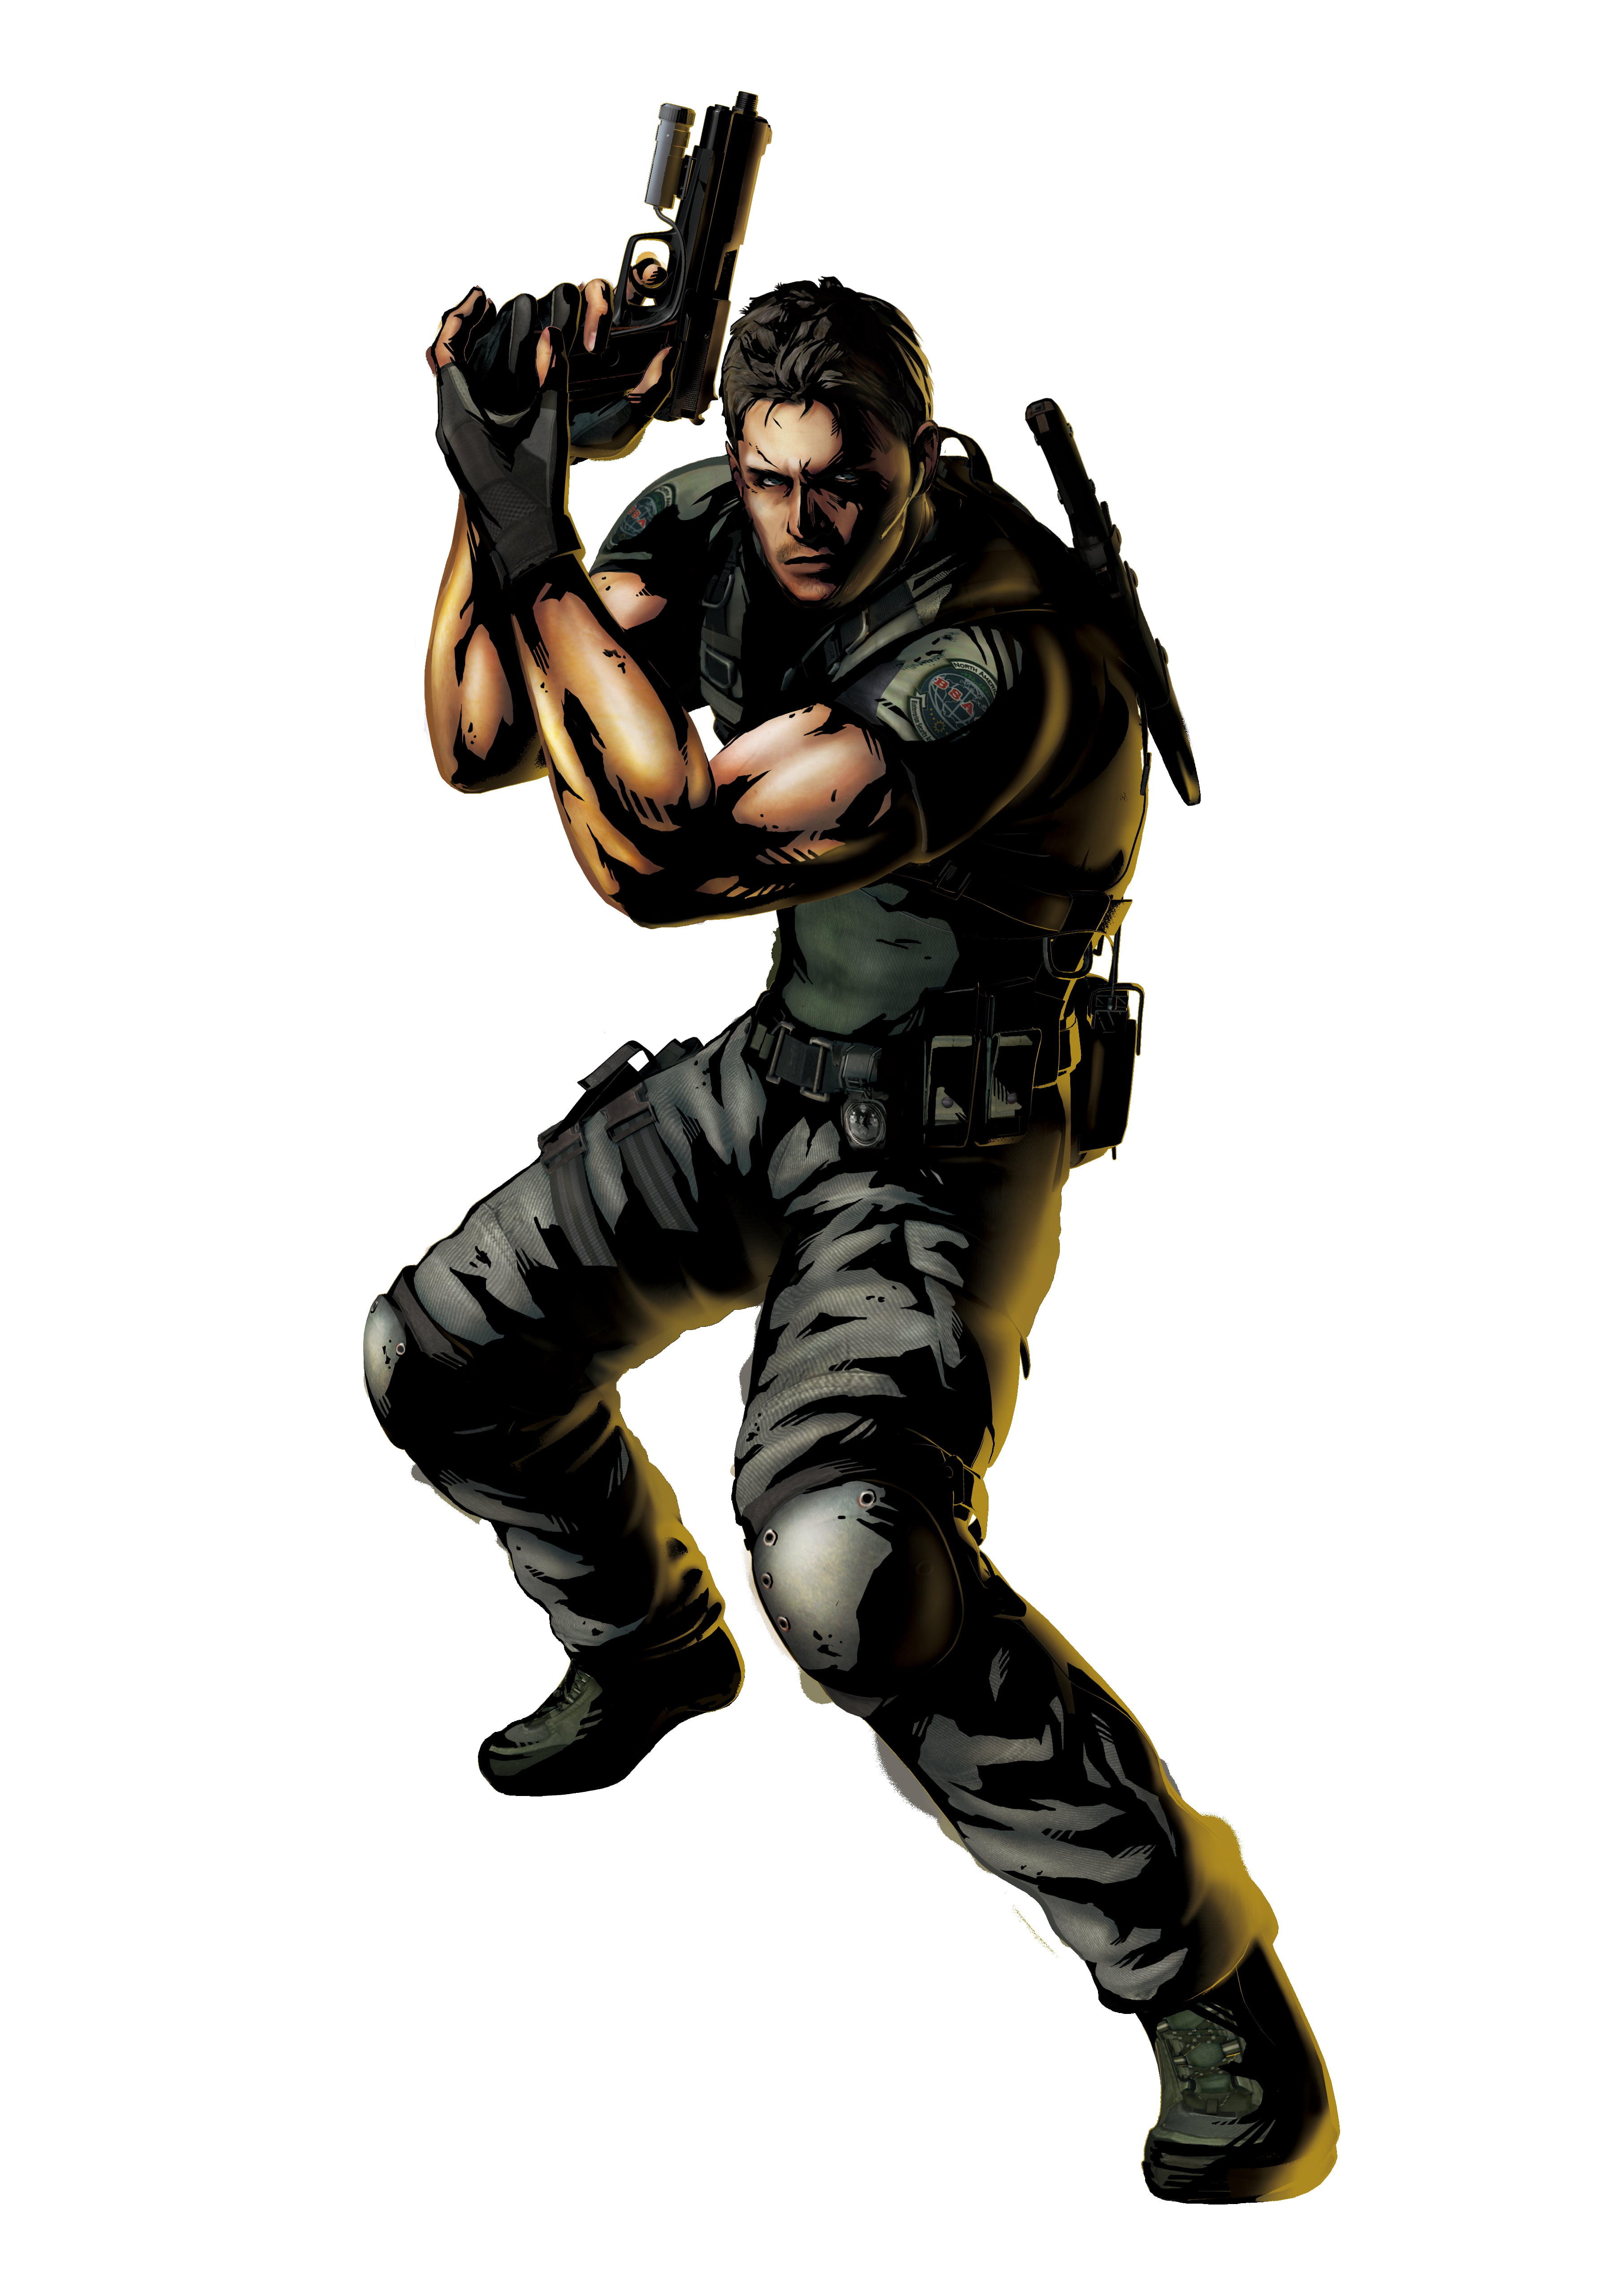 X Resolution Man Holding Gun Illustration Marvel Vs Capcom